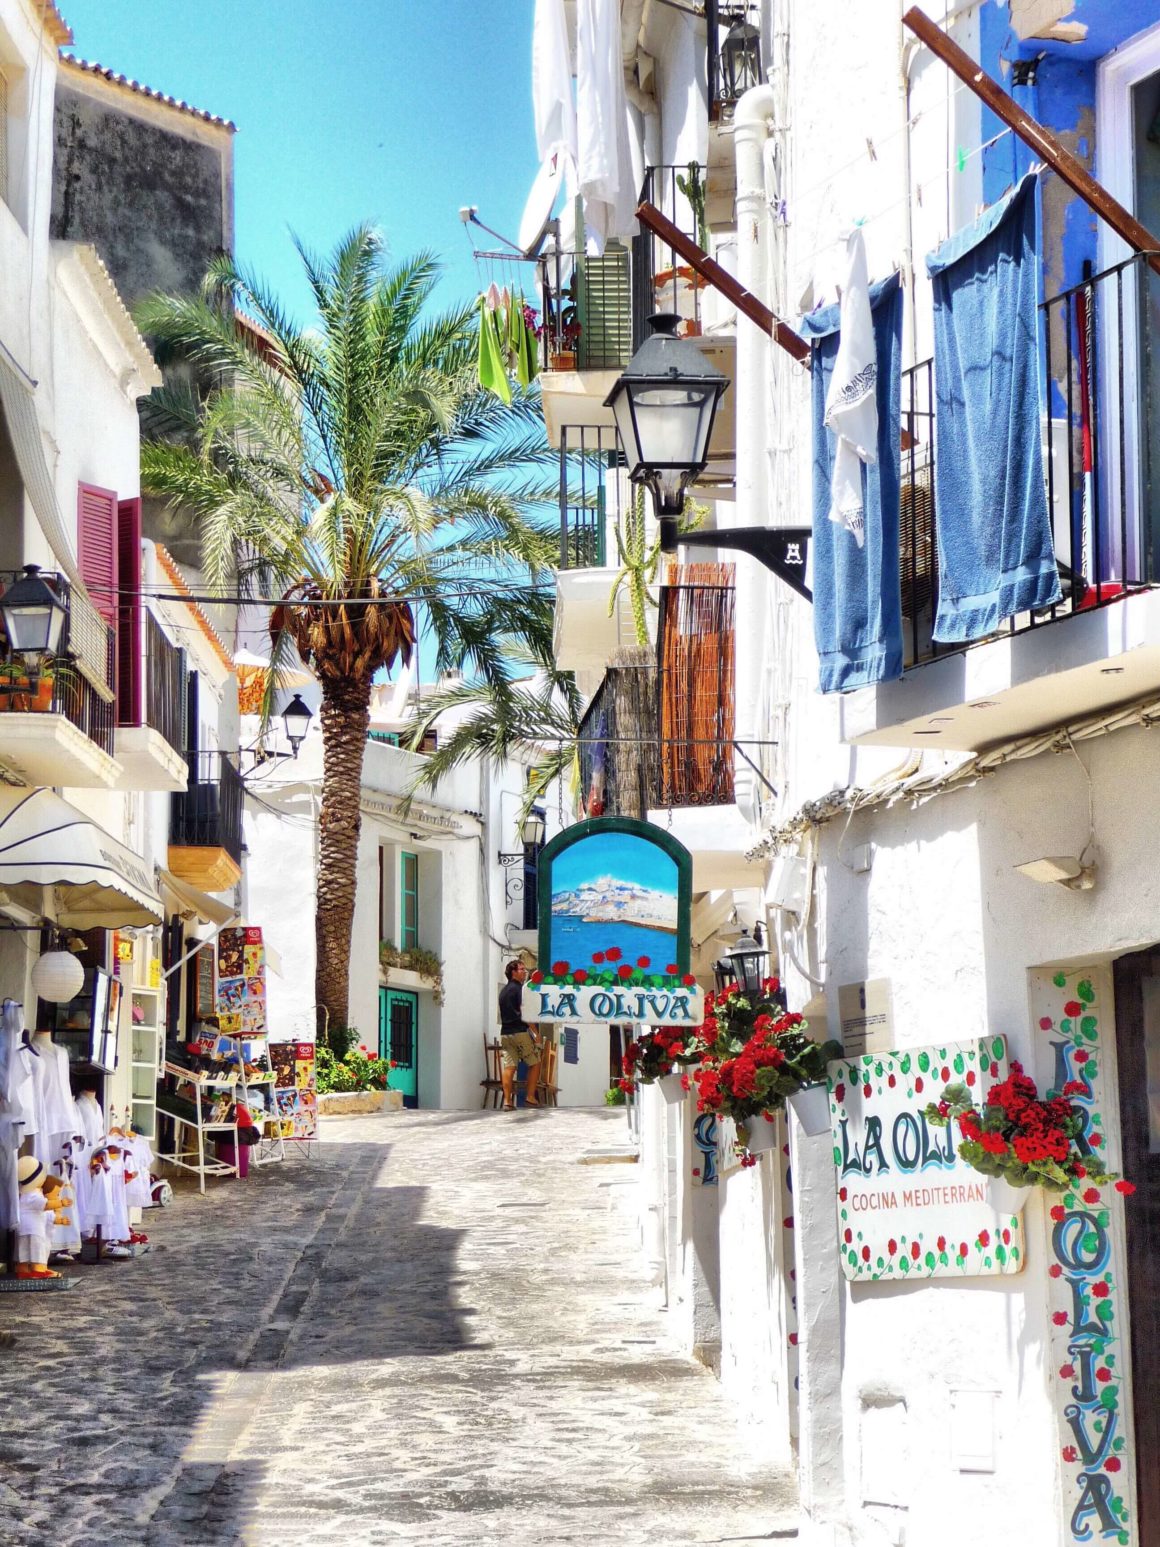 Descubra a cidade de Ibiza, bem como as vilas vizinhas de San Antonio e Santa Eulalia